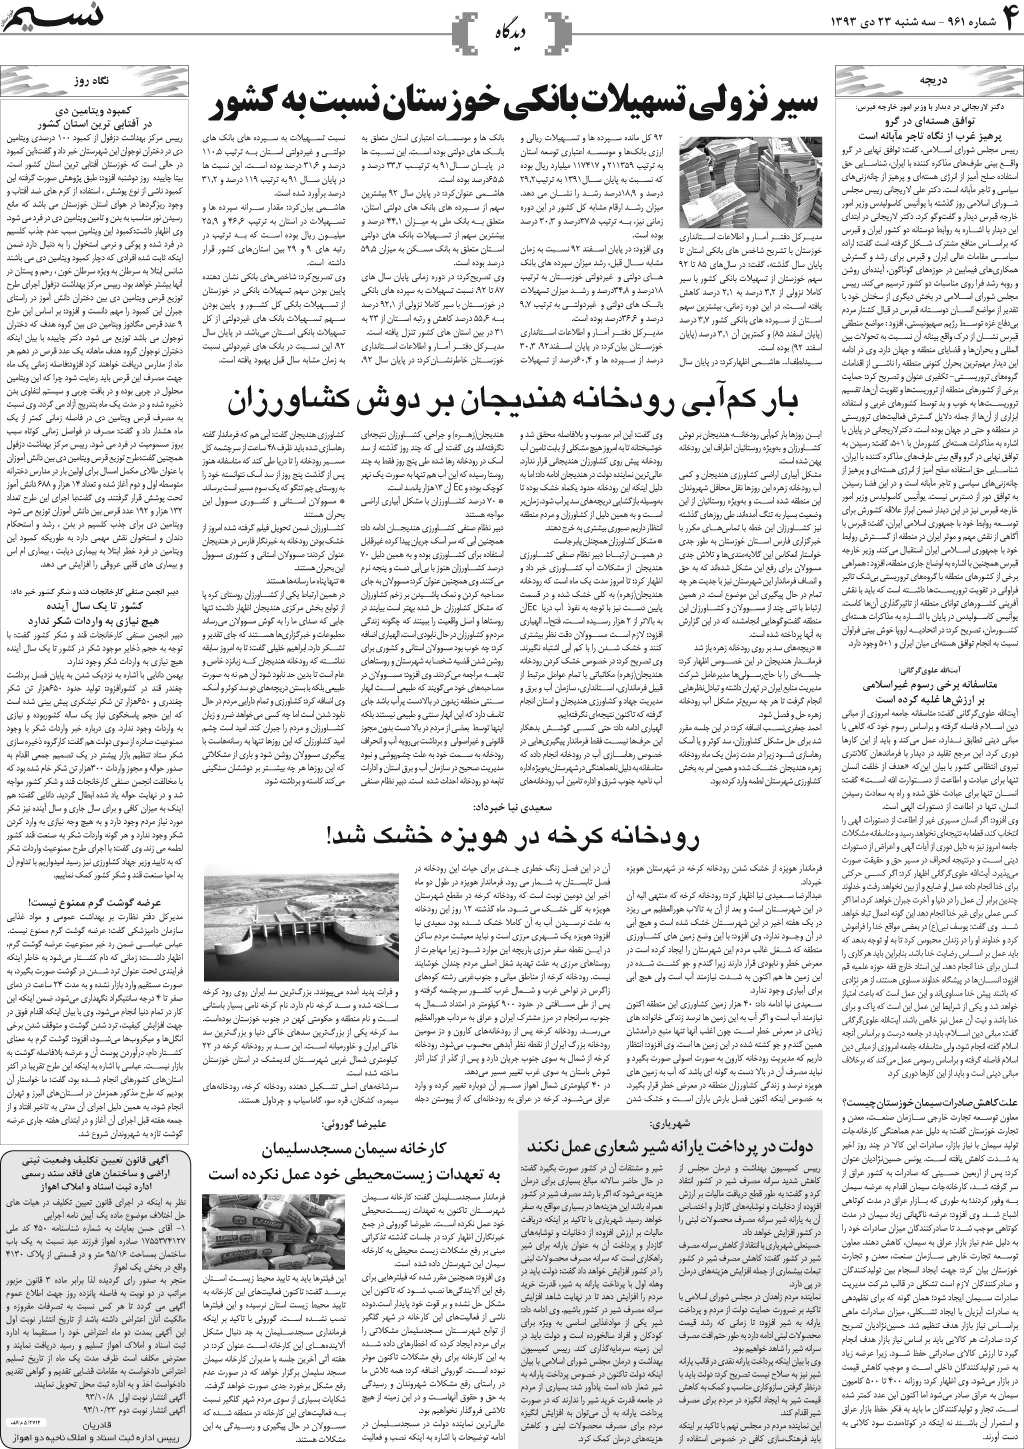 صفحه دیدگاه روزنامه نسیم شماره 961